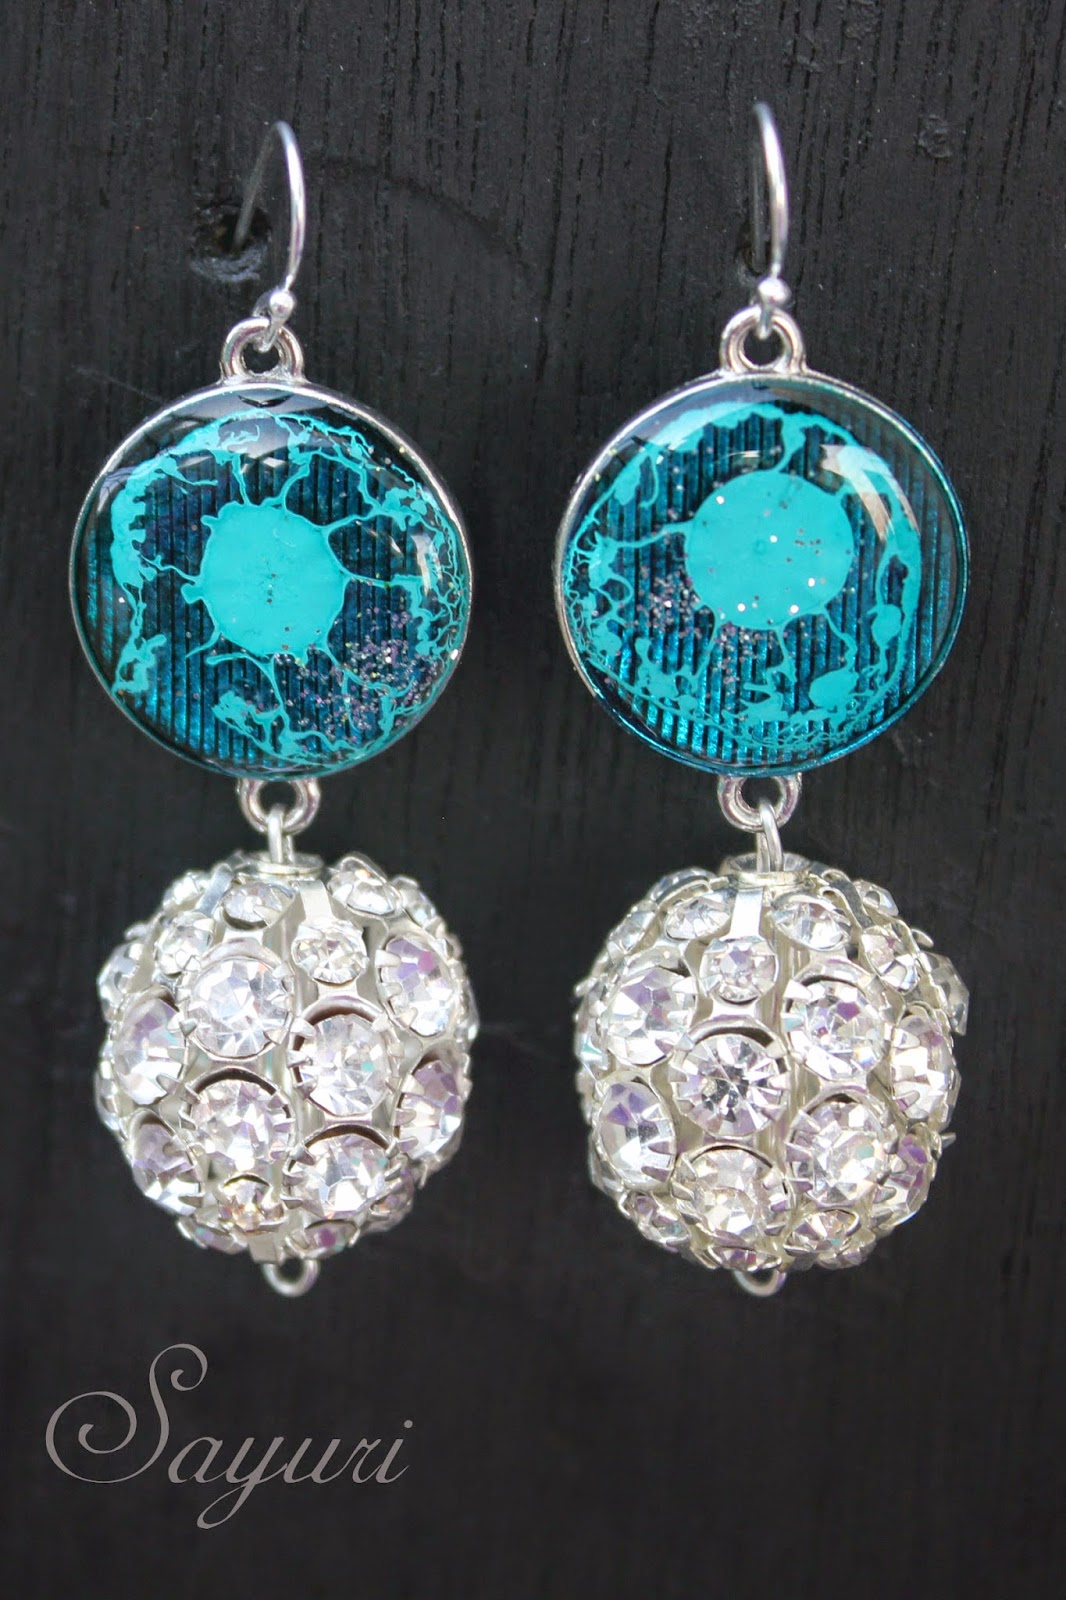 Translucent Bling resin earrings